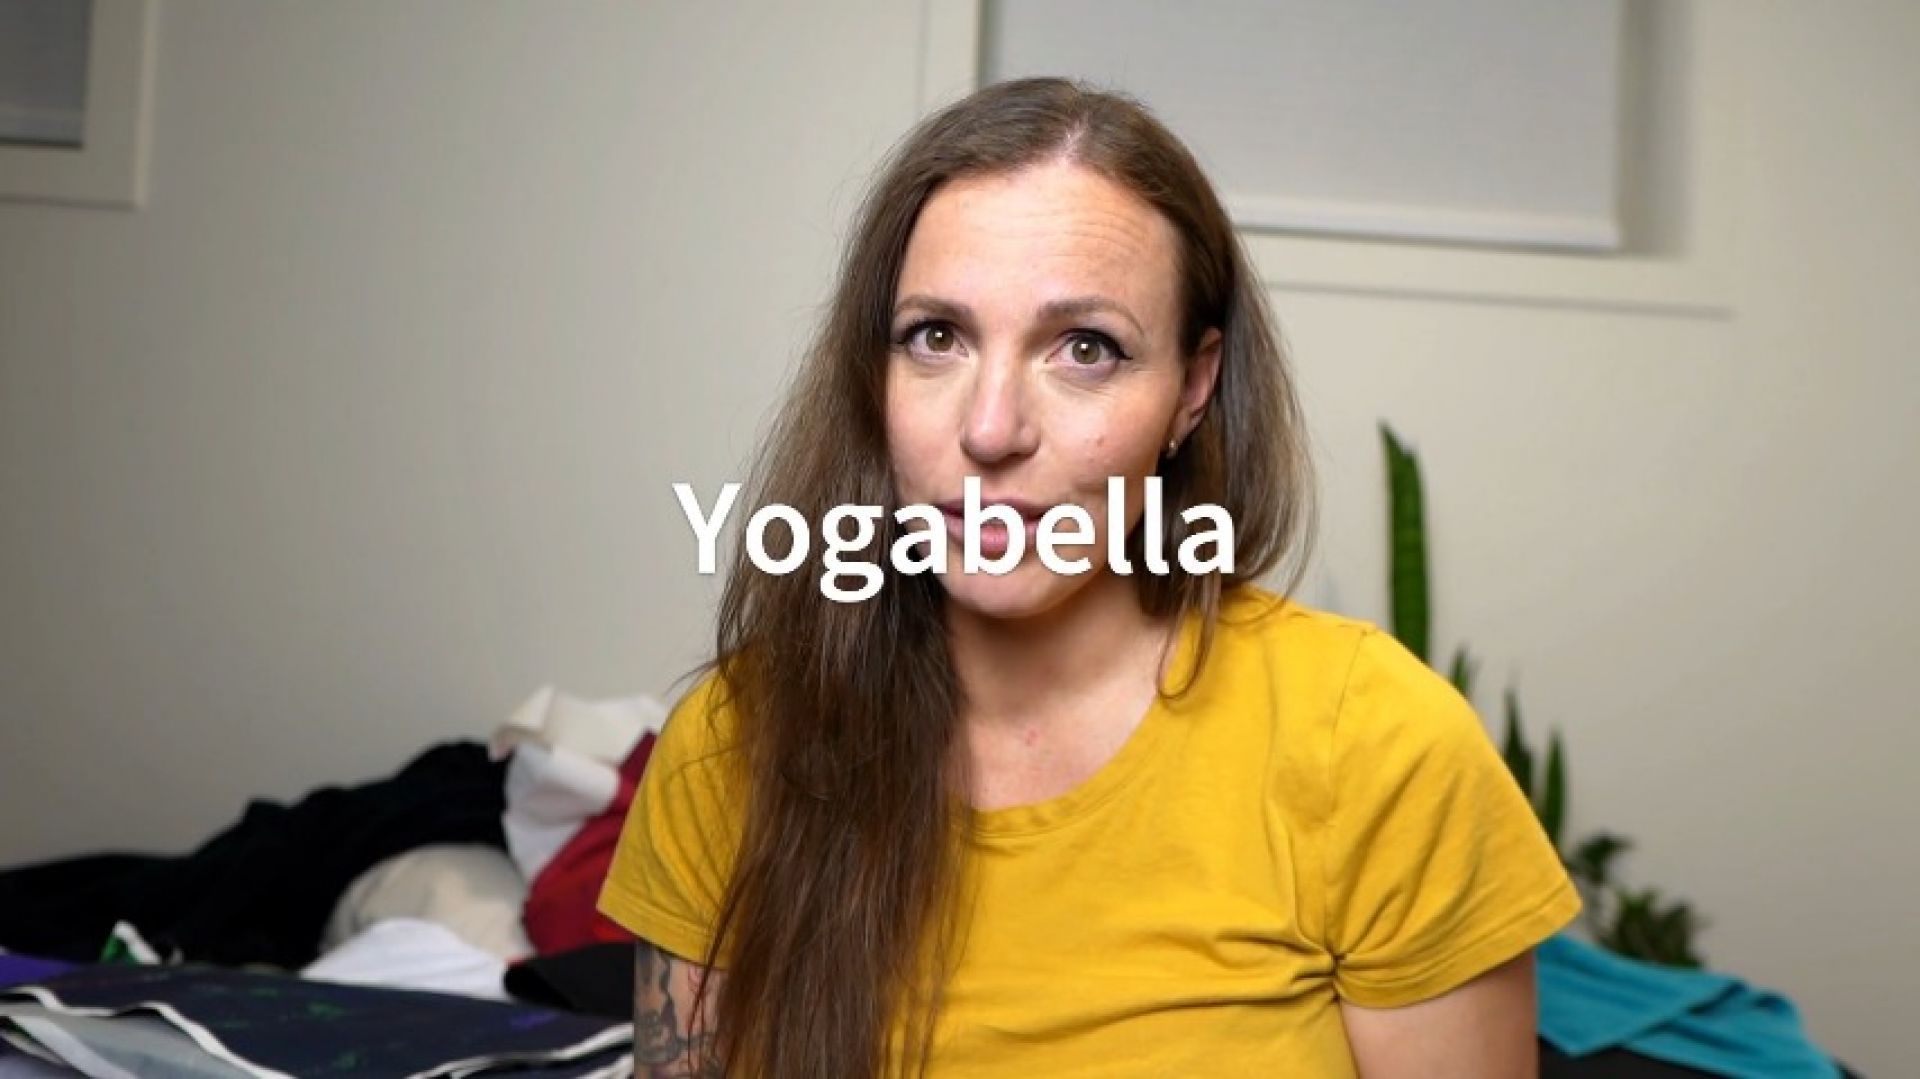 Yogabella Behind The Scenes